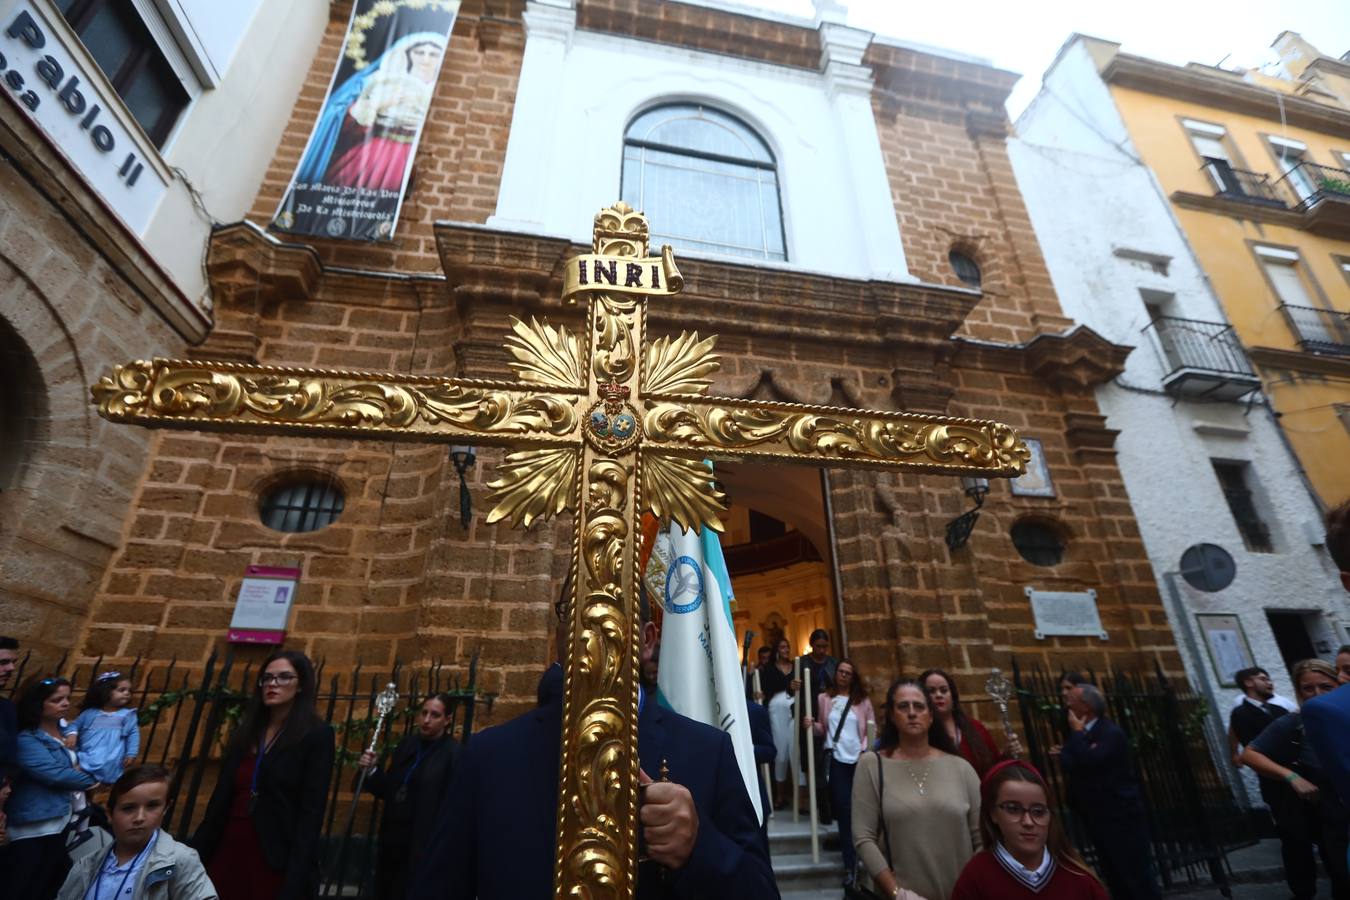 Procesión de la Virgen de la Palma Coronada